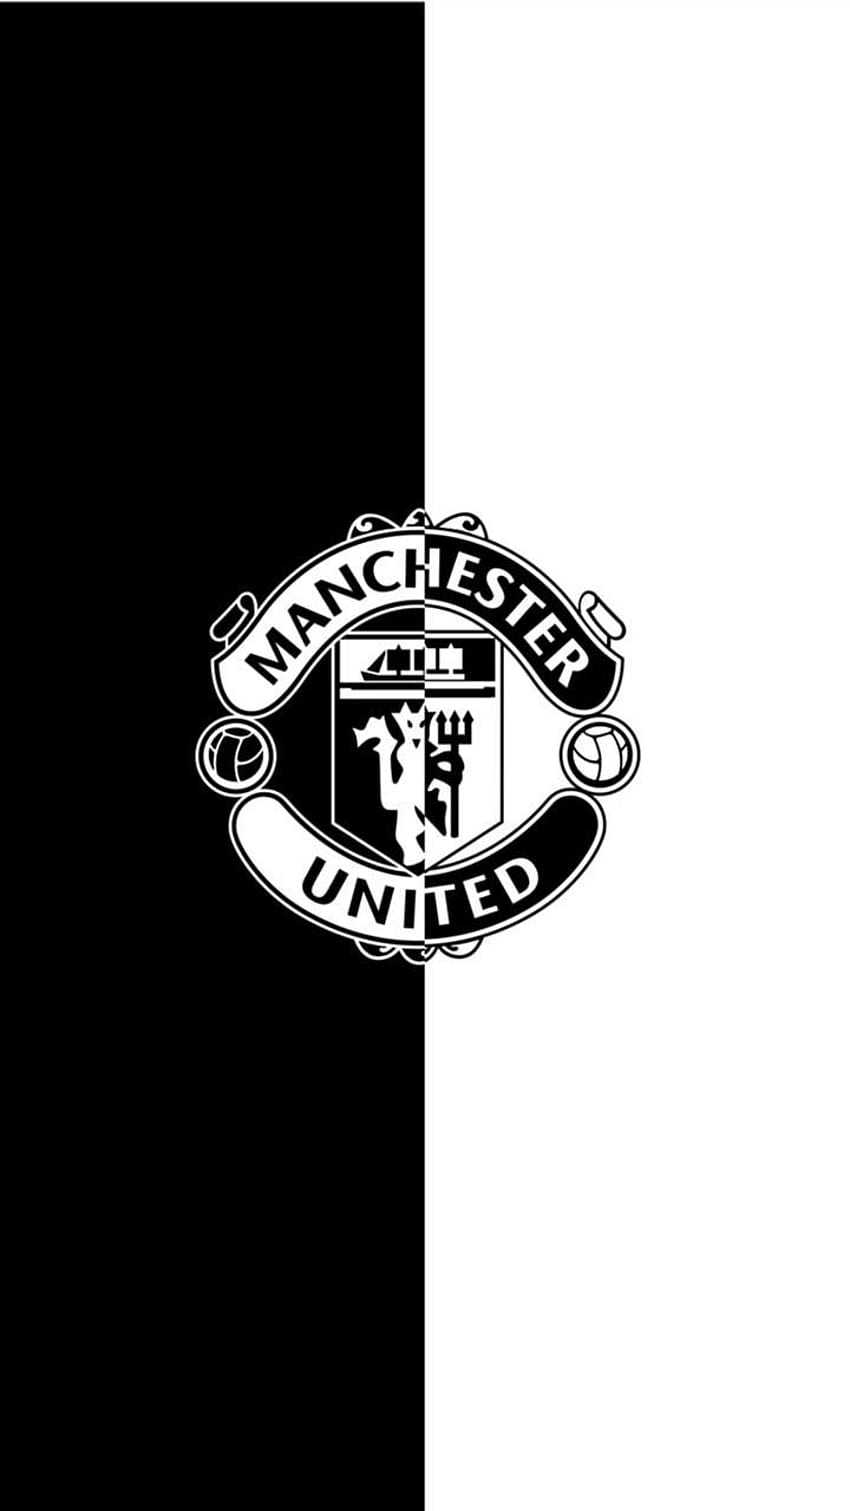 Man Utd . Manchester United, logotipo de Manchester United, leyendas de Manchester United, Manchester United Black fondo de pantalla del teléfono